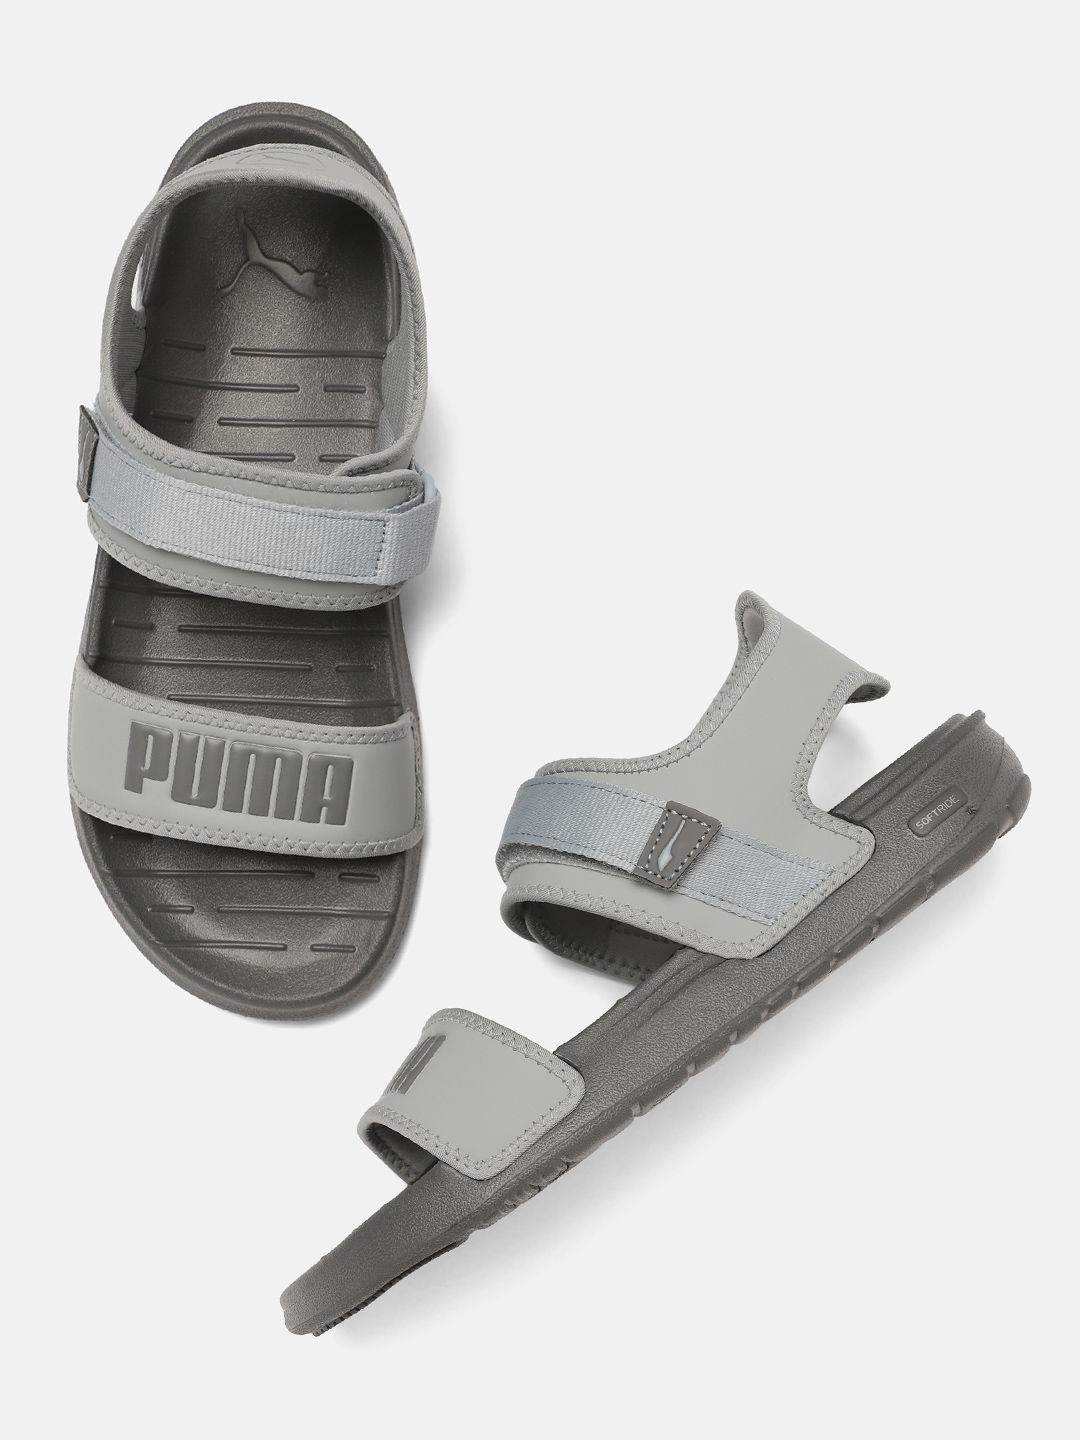 Puma Unisex Grey Softride Sandals Price in India